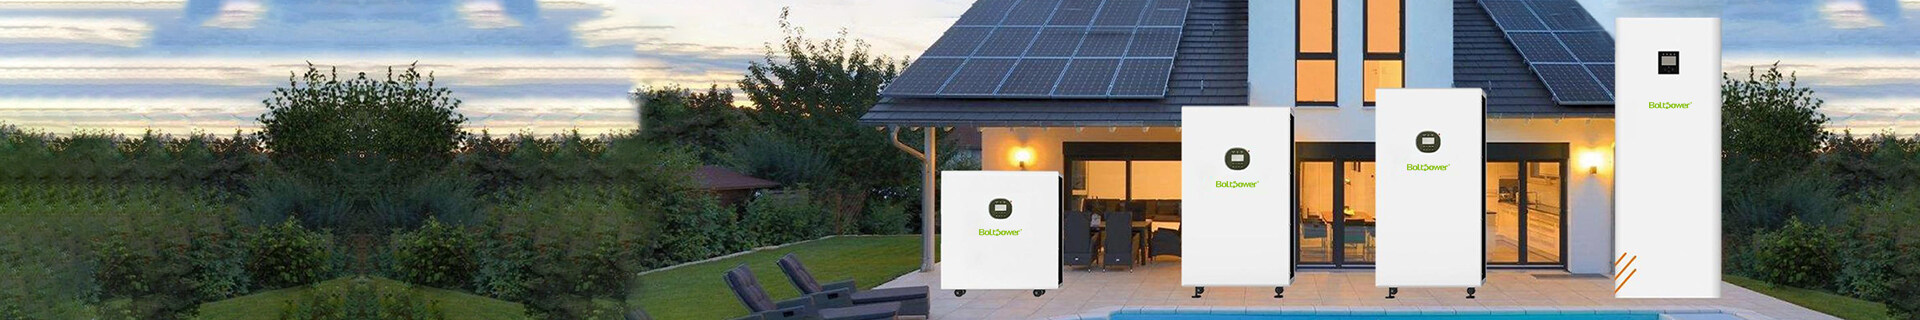 家庭用エネルギー貯蔵、家庭用エネルギー貯蔵システム、家庭用エネルギー貯蔵バッテリー